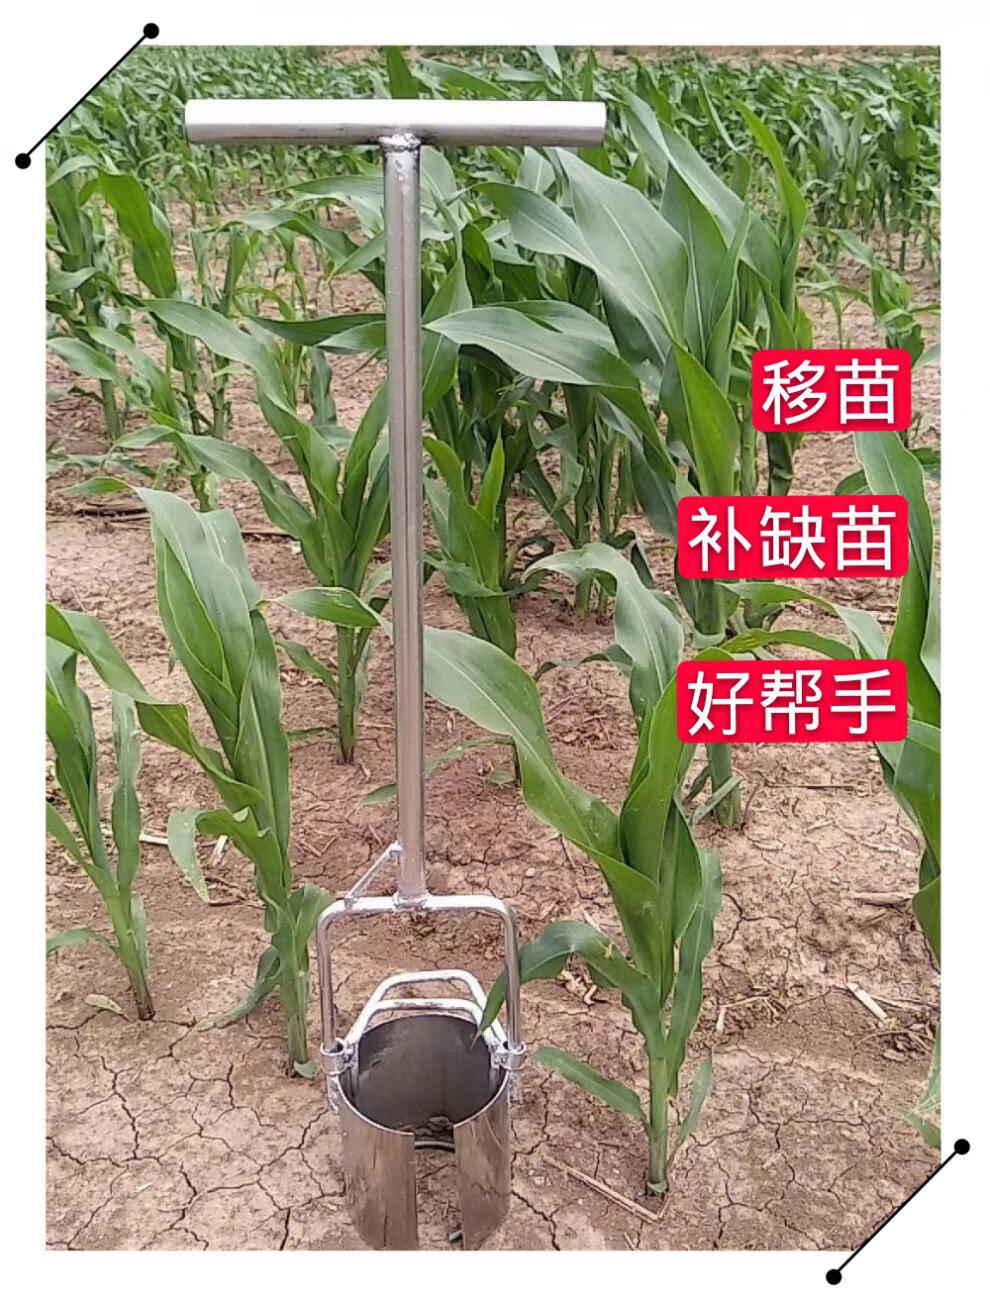 移苗神器移栽器不锈钢补玉米苗多功能移秧苗起苗特惠耕种机械 7